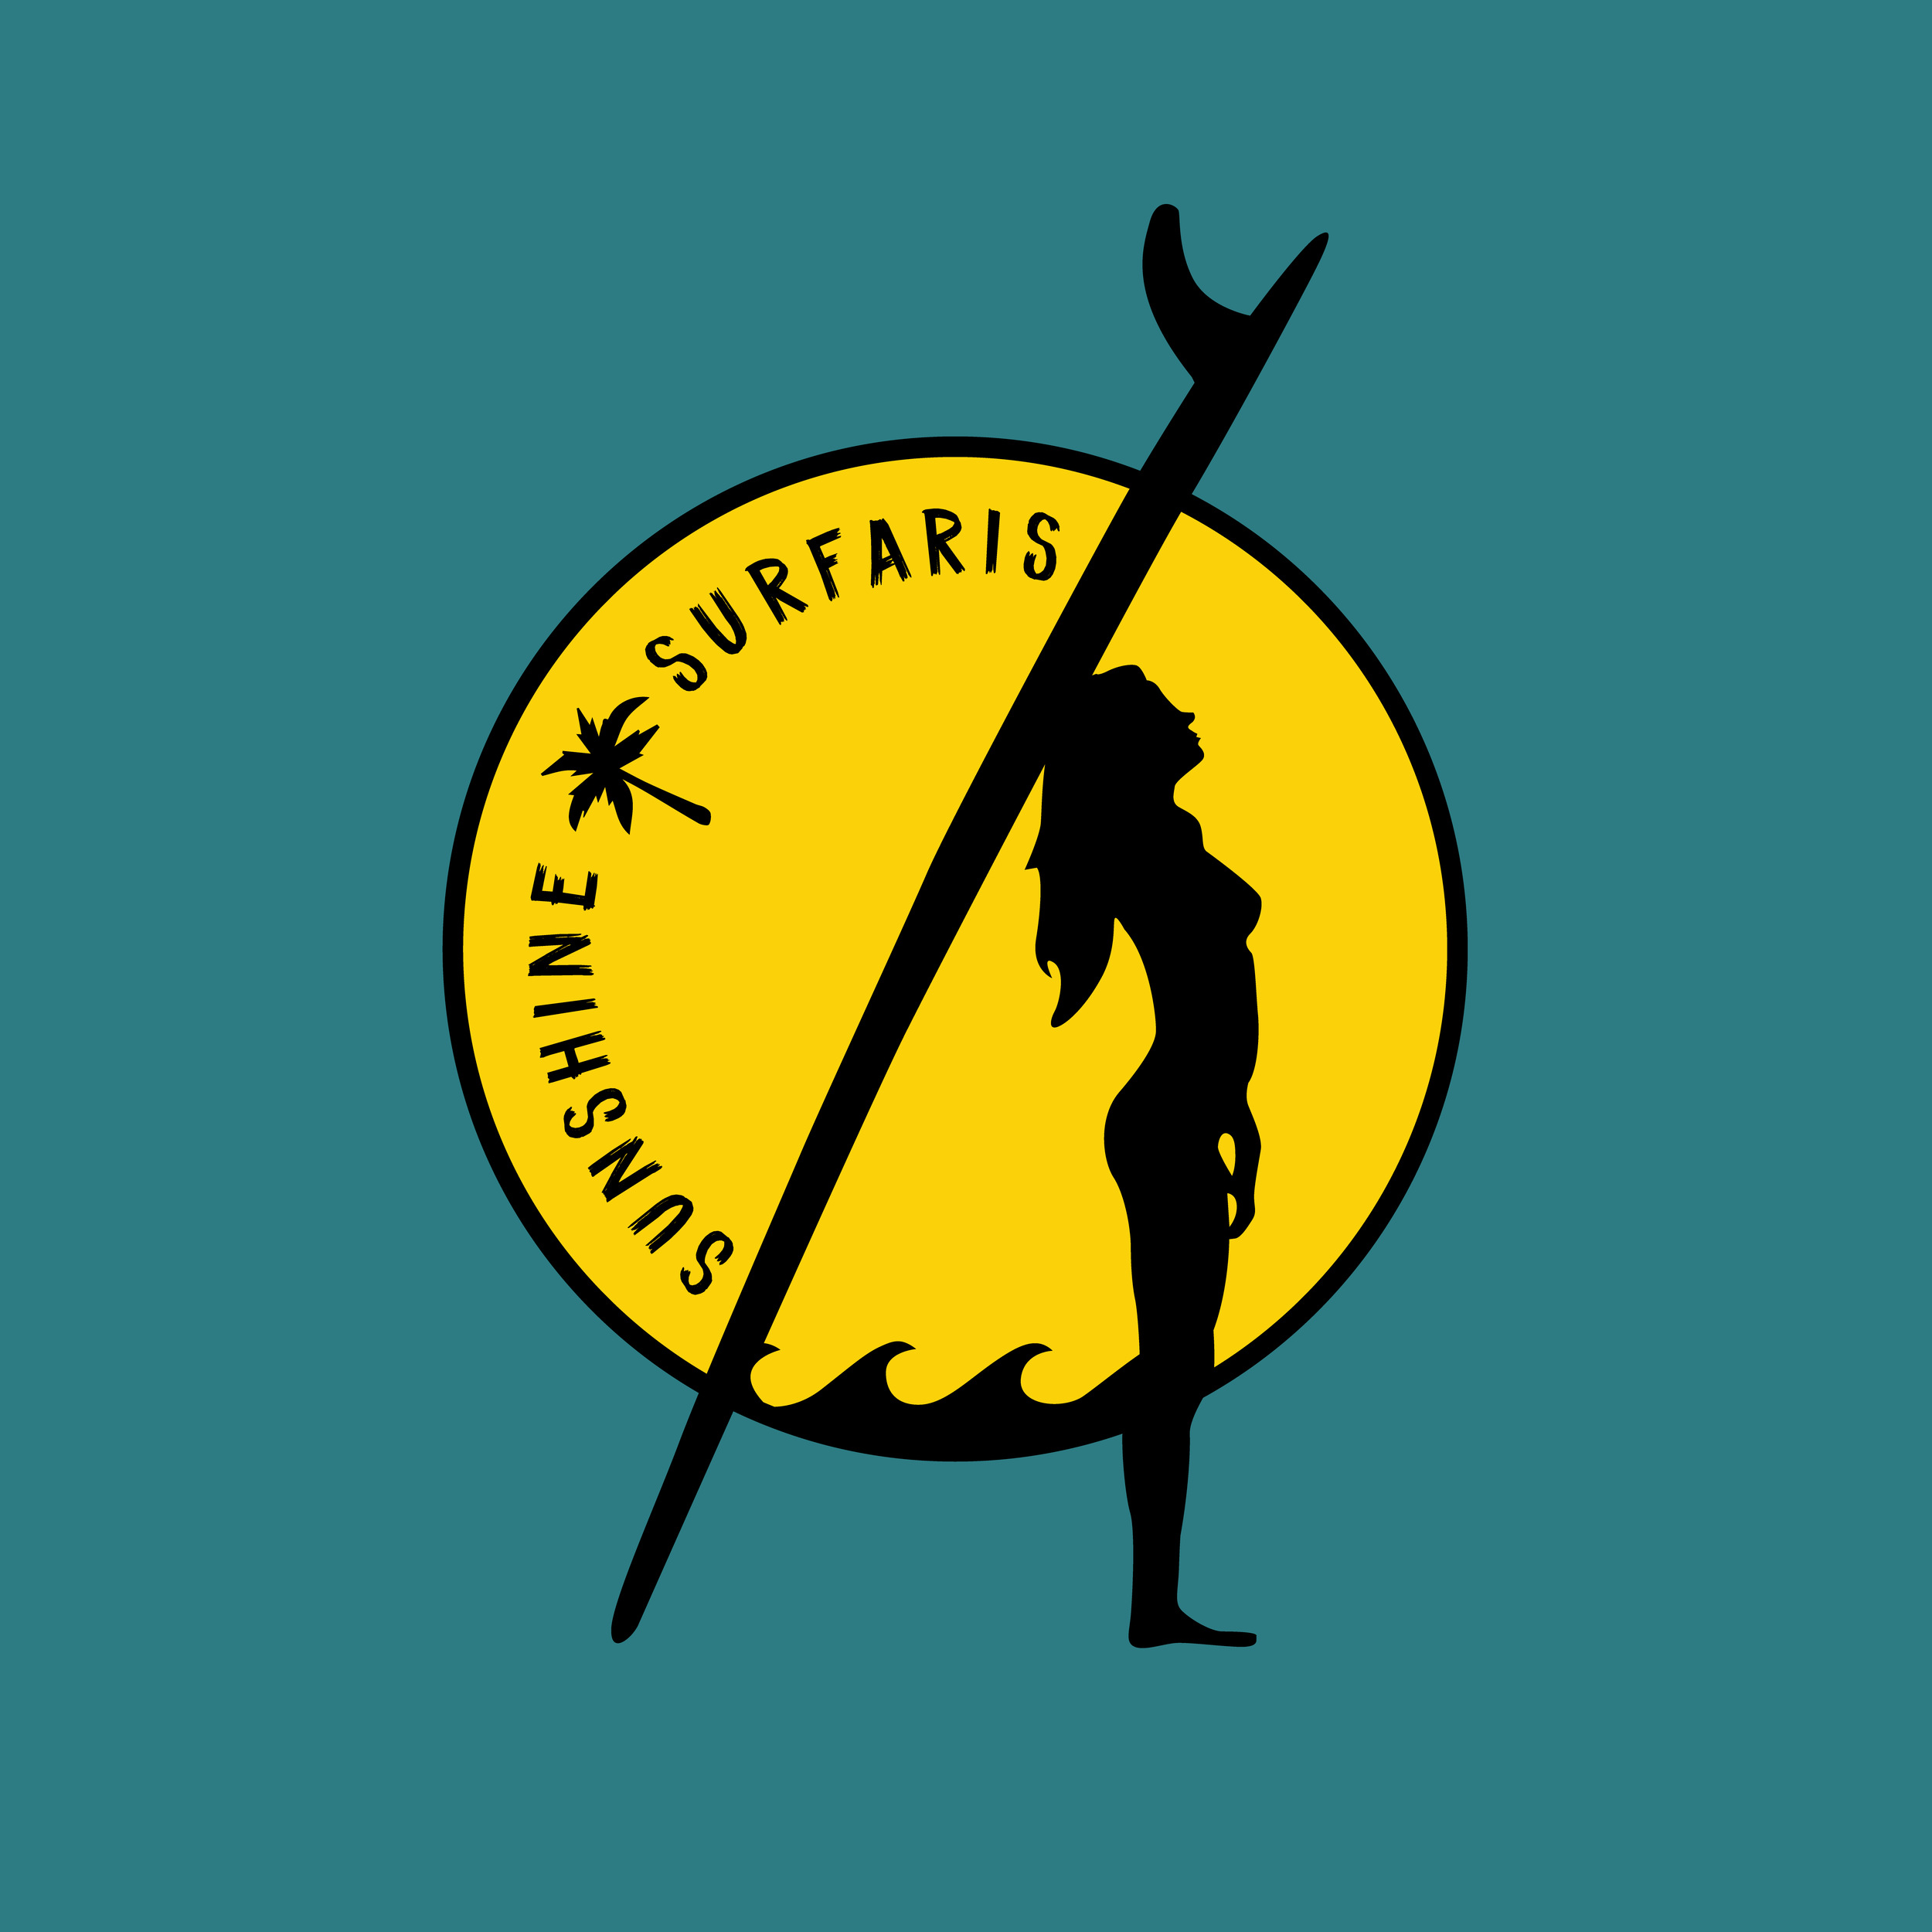 Sunshine_Surfaris_Logo-01.png